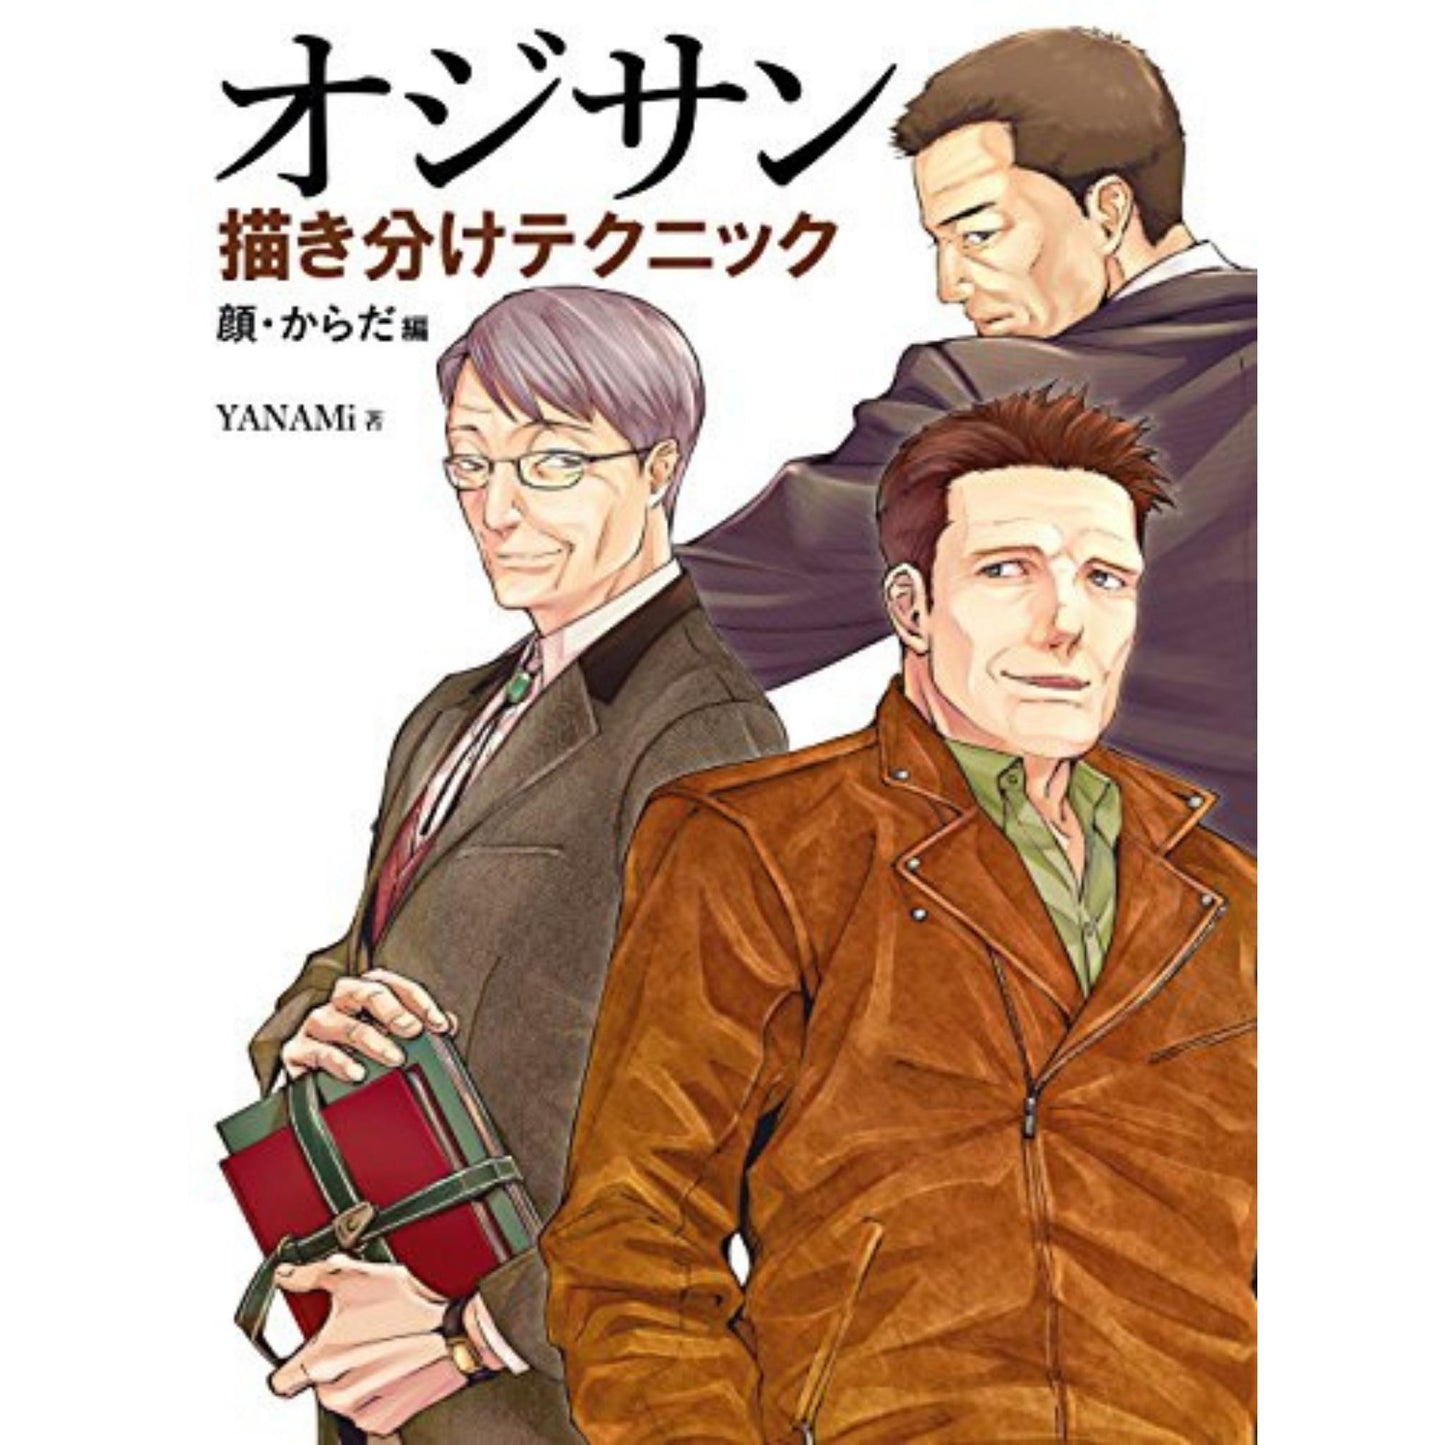 How to draw jap. Zeichenbuch - ältere Männer